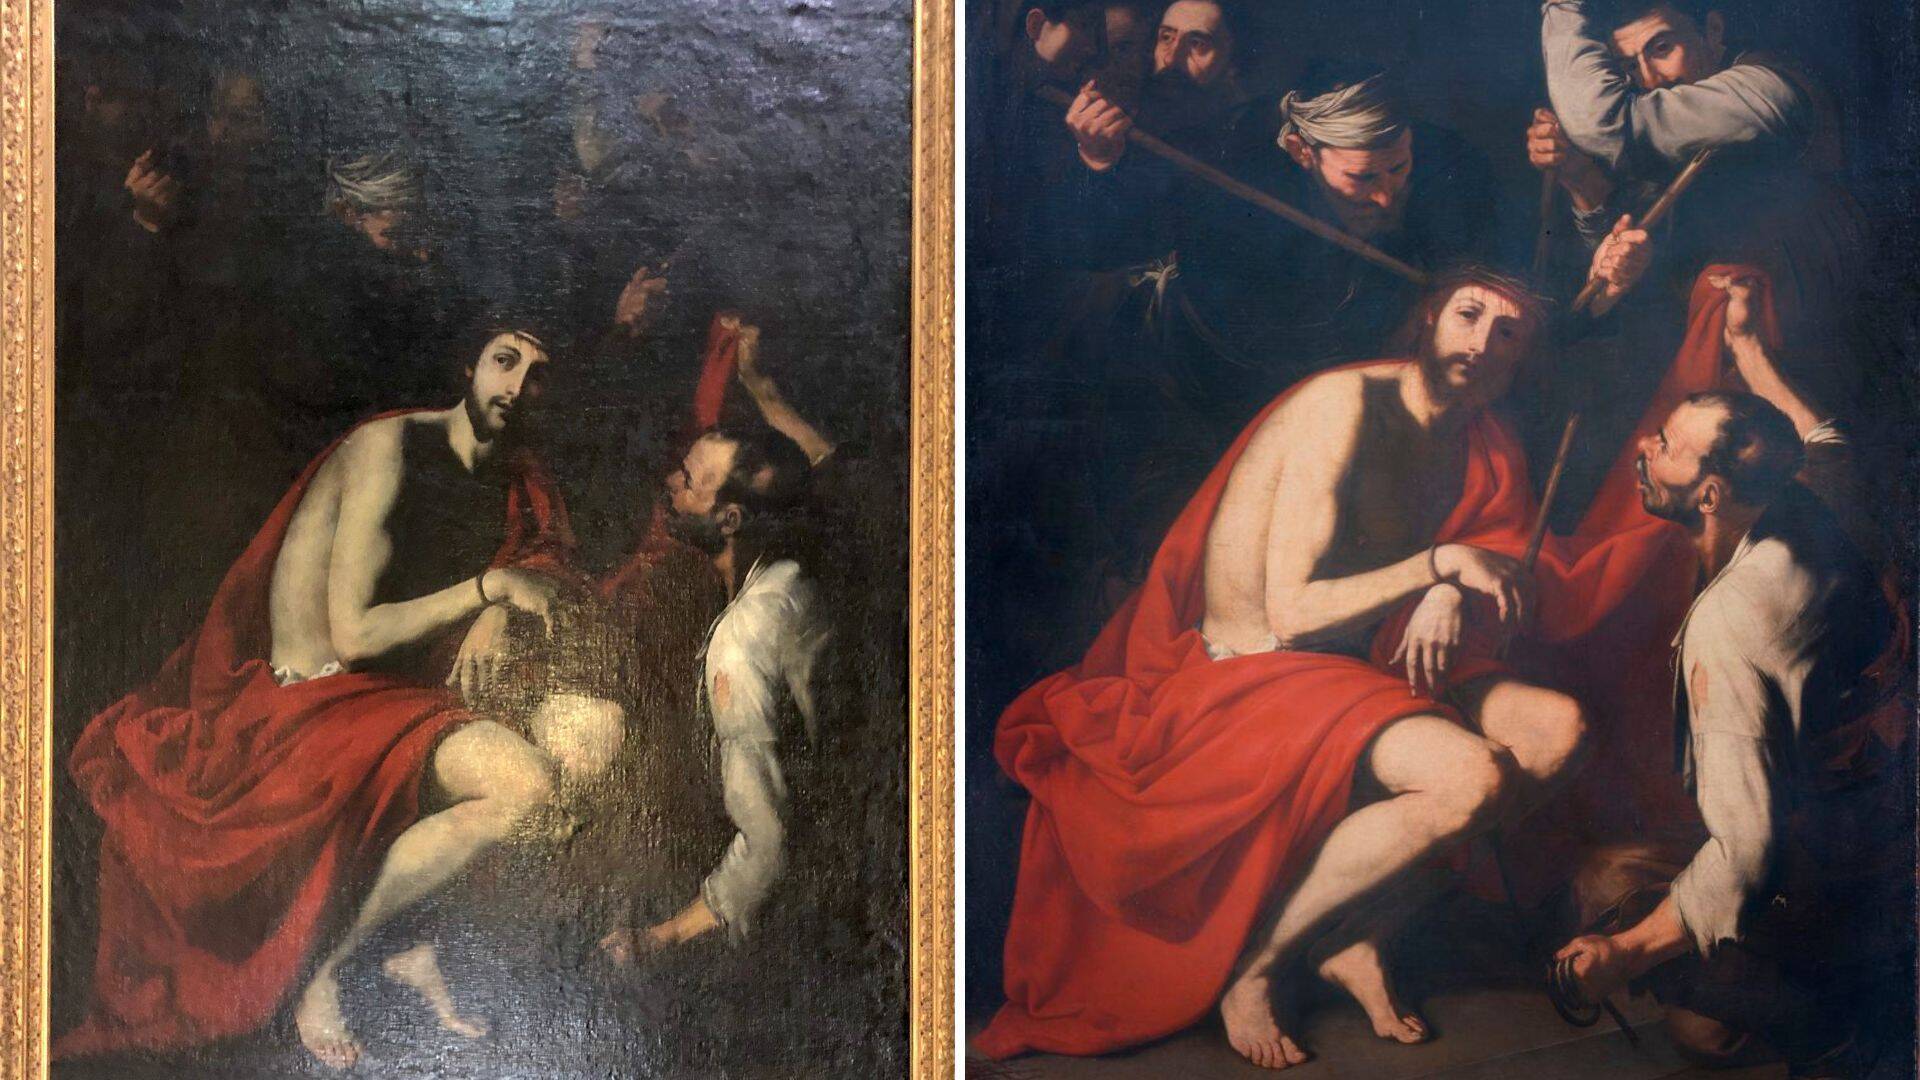 Dipinto della chiesa di Uboldo somigliante ad uno della pinacoteca di Brera: è un Jusepe De Ribera?